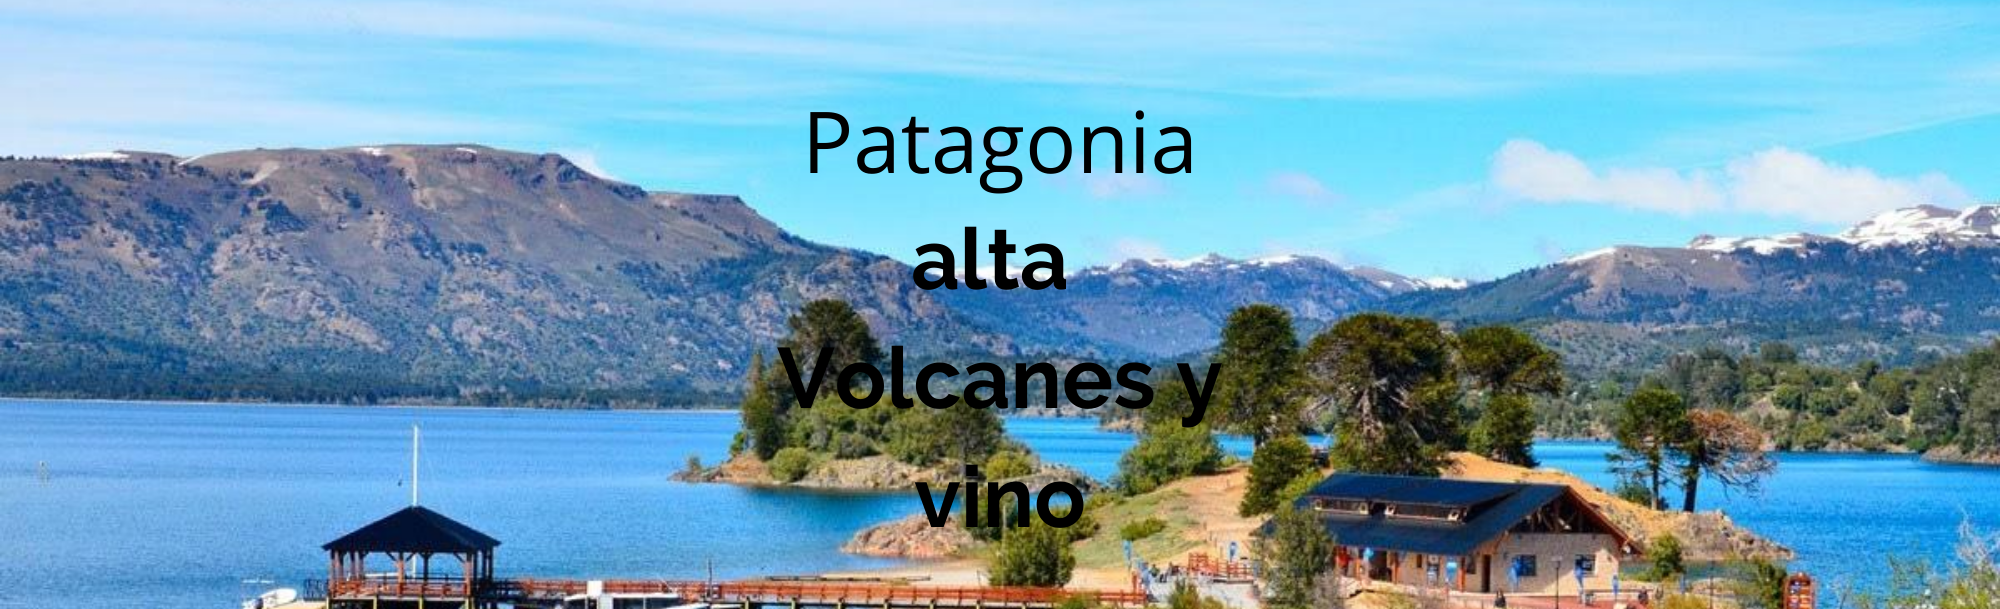 Patagonia alta | volcanes y vino